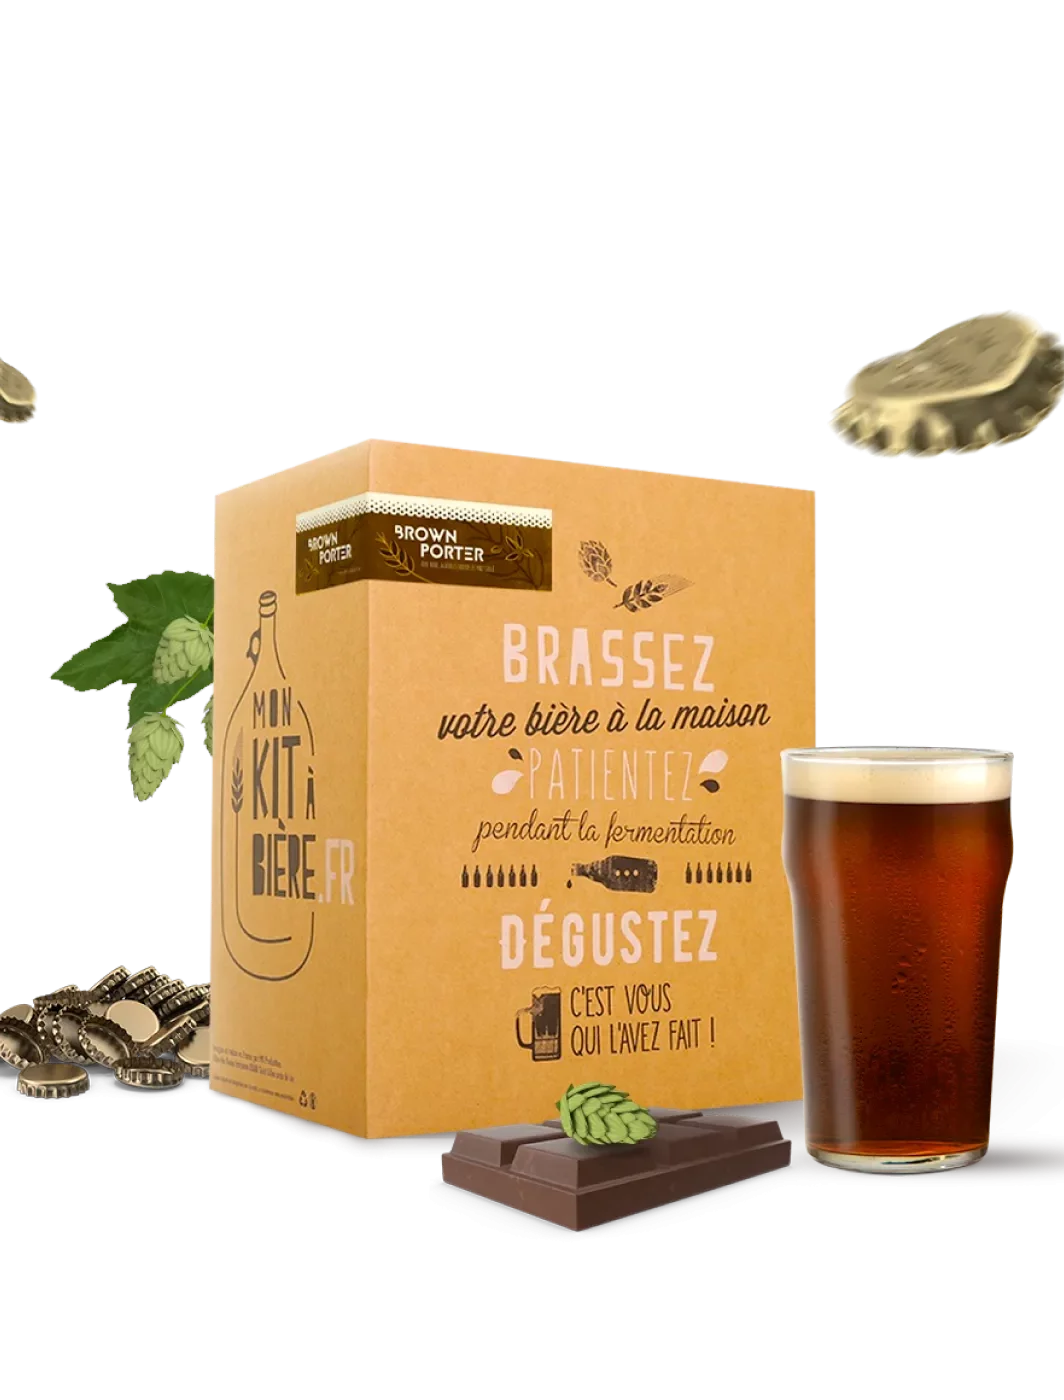 Kit intermédiaire de Brassage Artisanal Bière Brune Porter 5 litres